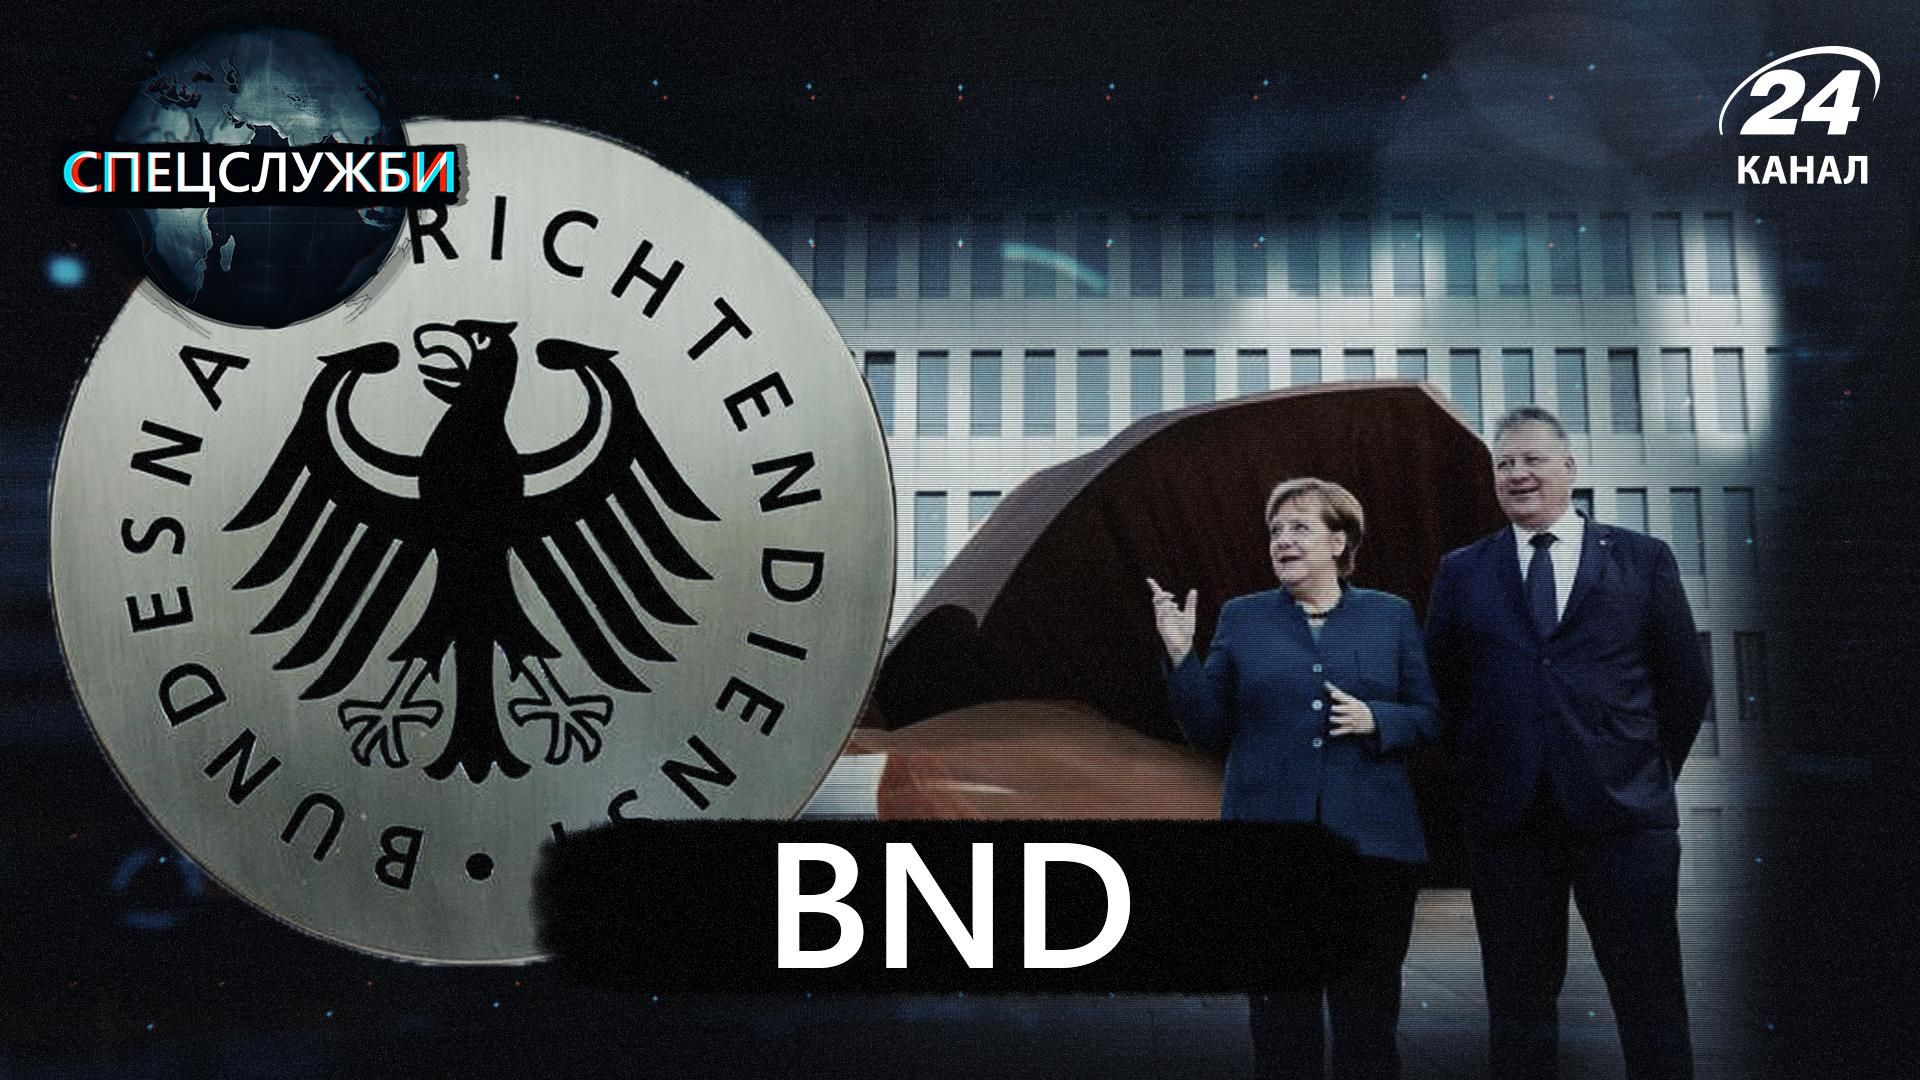 Нацистские преступники, которые стали агентами немецкой разведки: все о спецслужбе BND